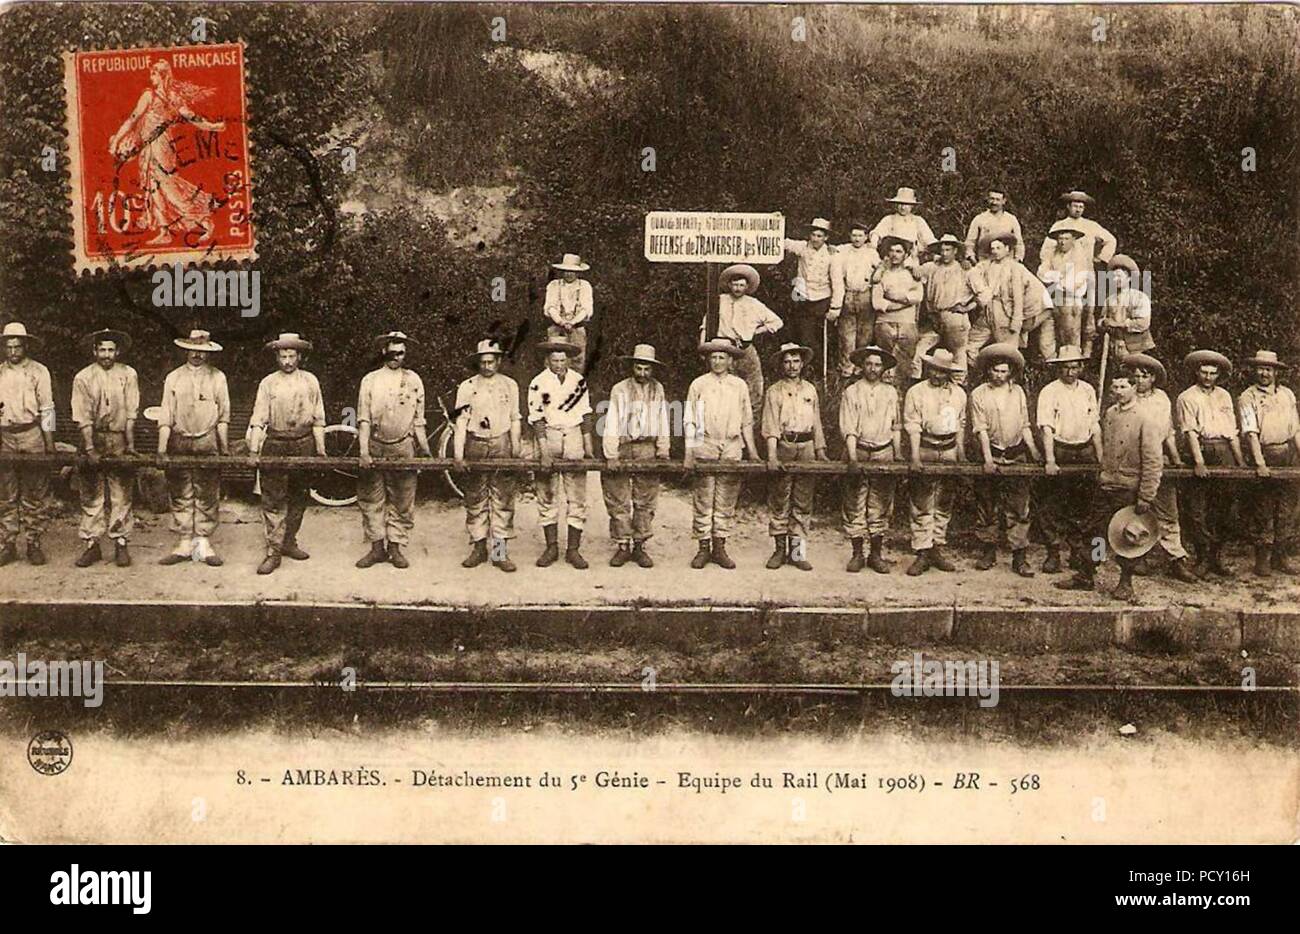 Ambares detachement-du-5e-genie-equipe-du-rail-mai-1905. Stock Photo